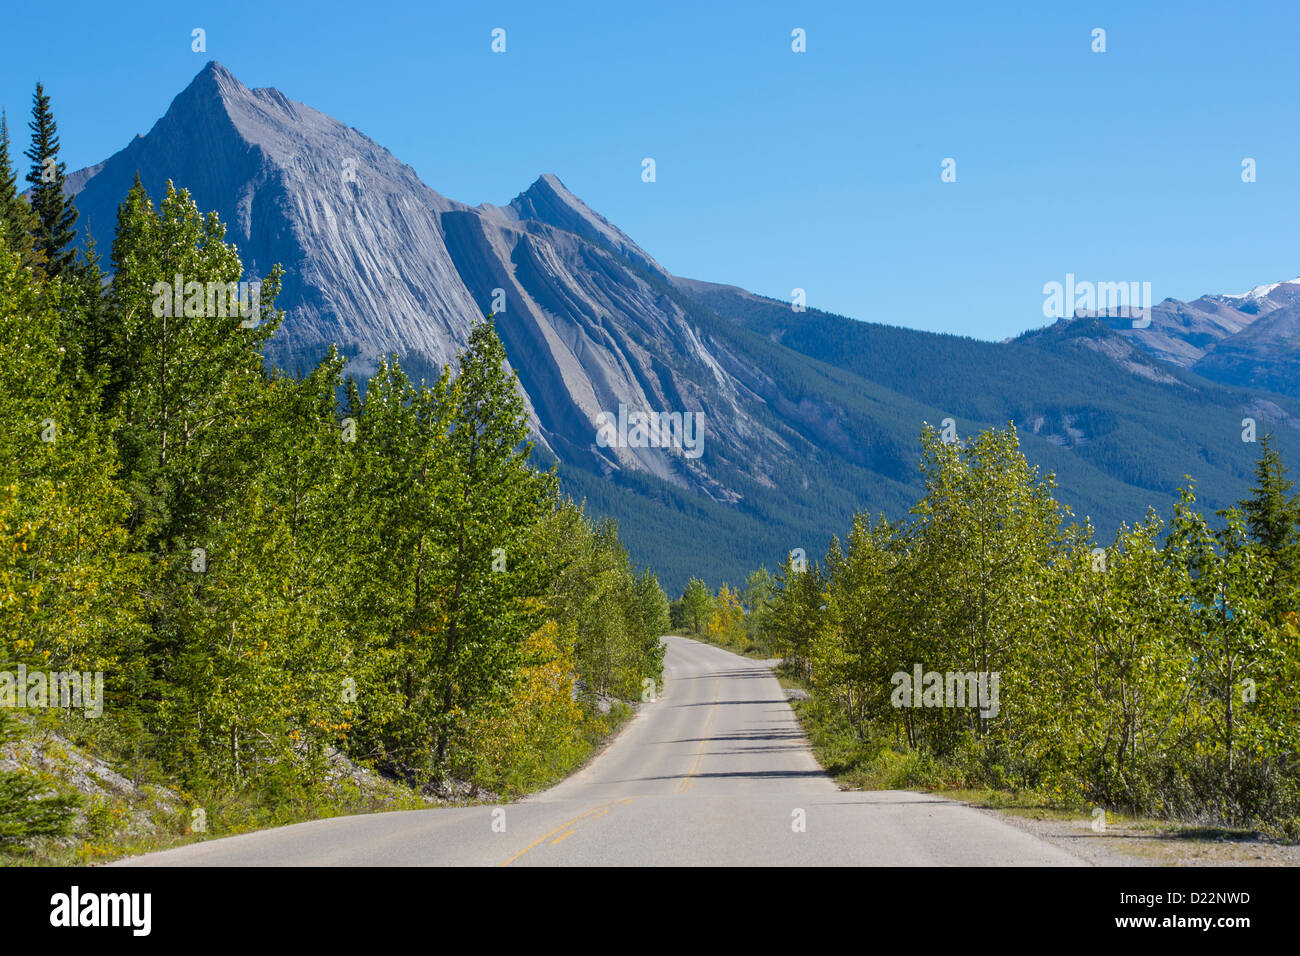 Route de la vallée de la Maligne dans le parc national Jasper en Alberta Canada Banque D'Images